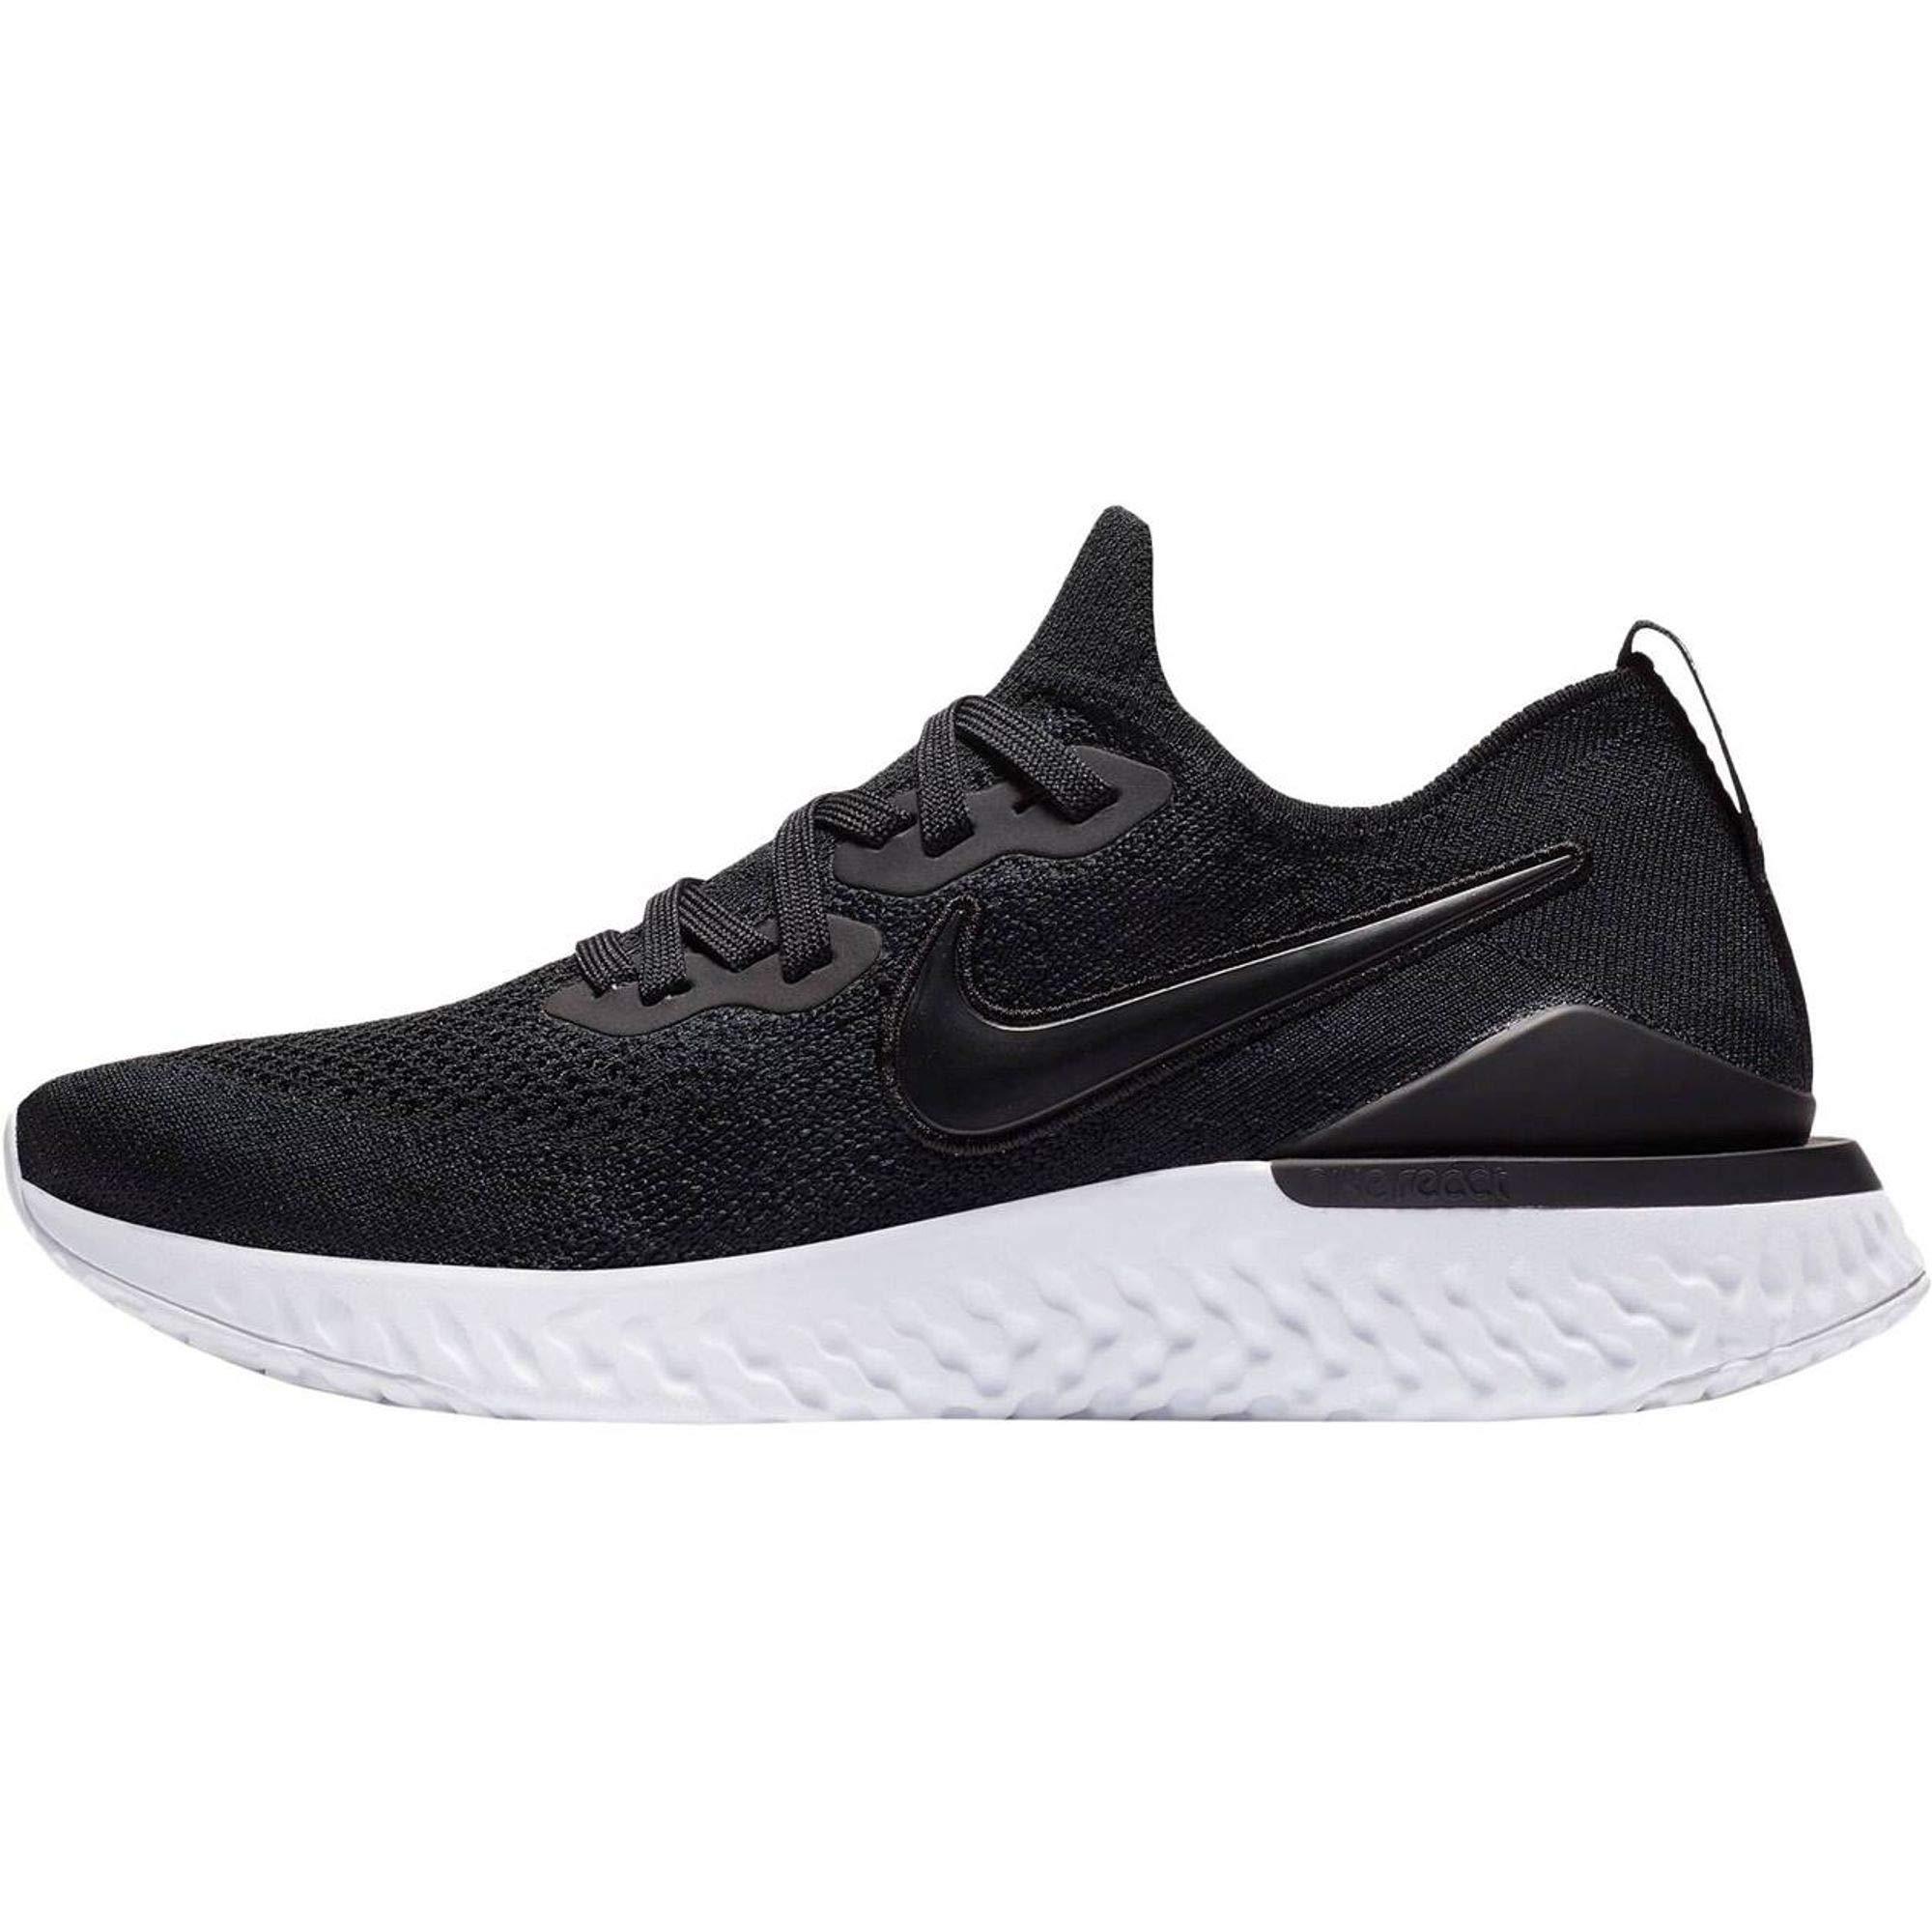 Nike Rubber Epic React Flyknit 2 Running Shoe in Black | Lyst UK